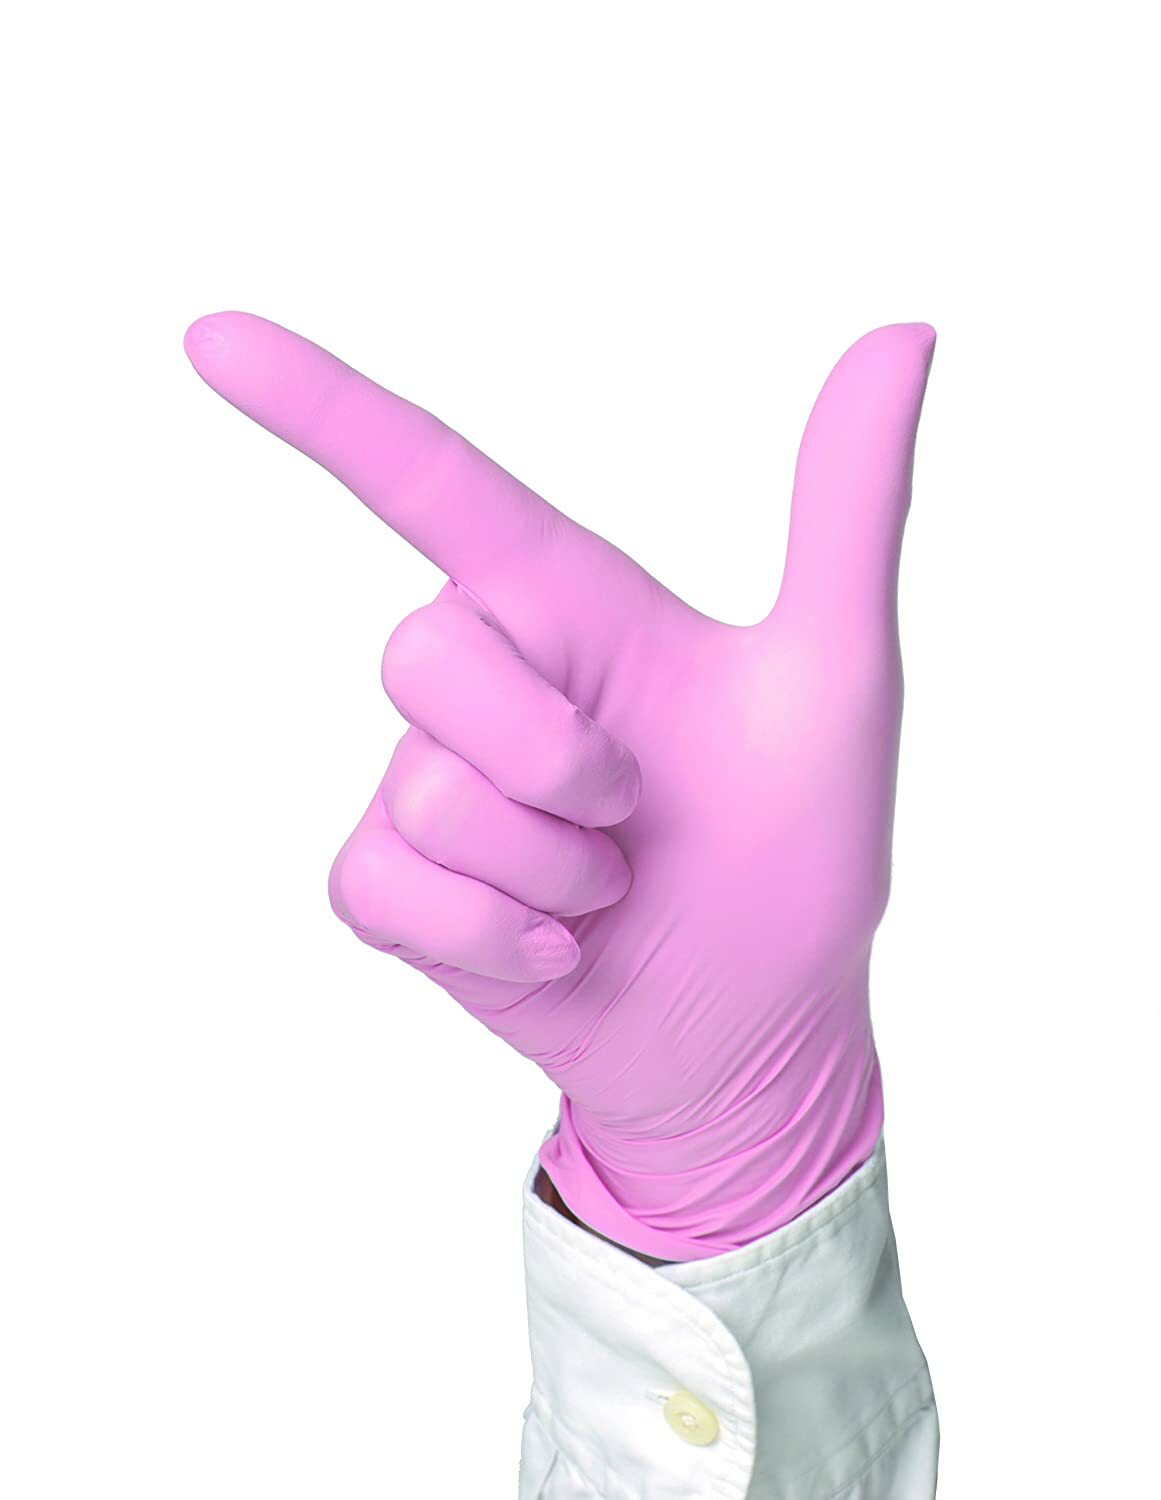 SEMPERCARE SOFT, ochranné nitrilové rukavice bez púdru, 200ks, veľ. XS, ružové